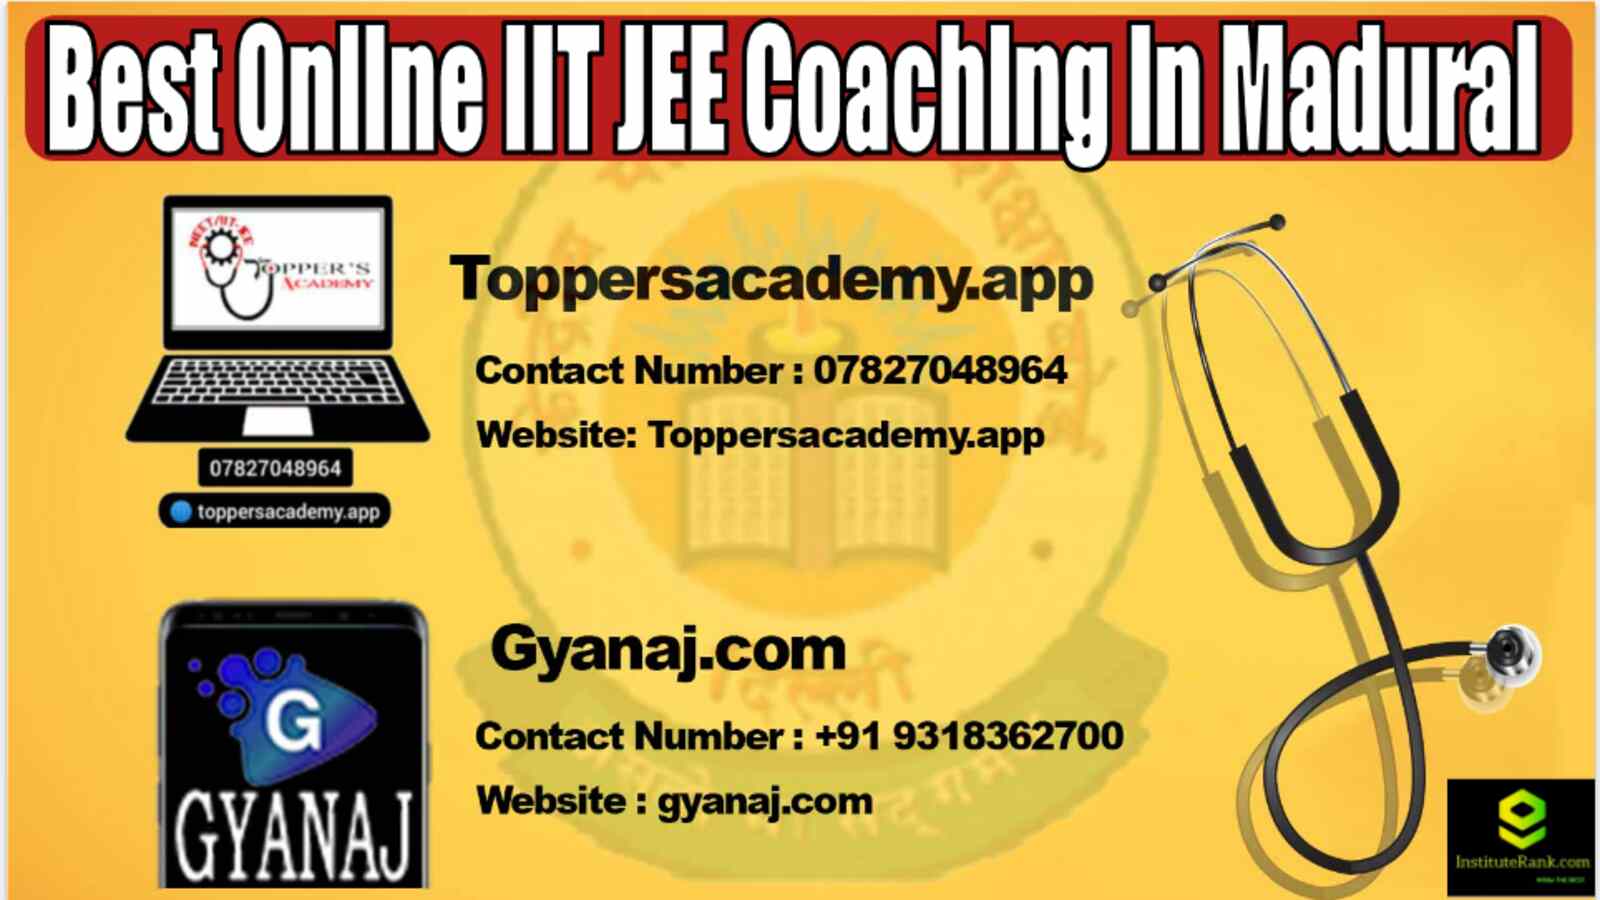 Best Online IIT JEE Coaching in Madurai 2022